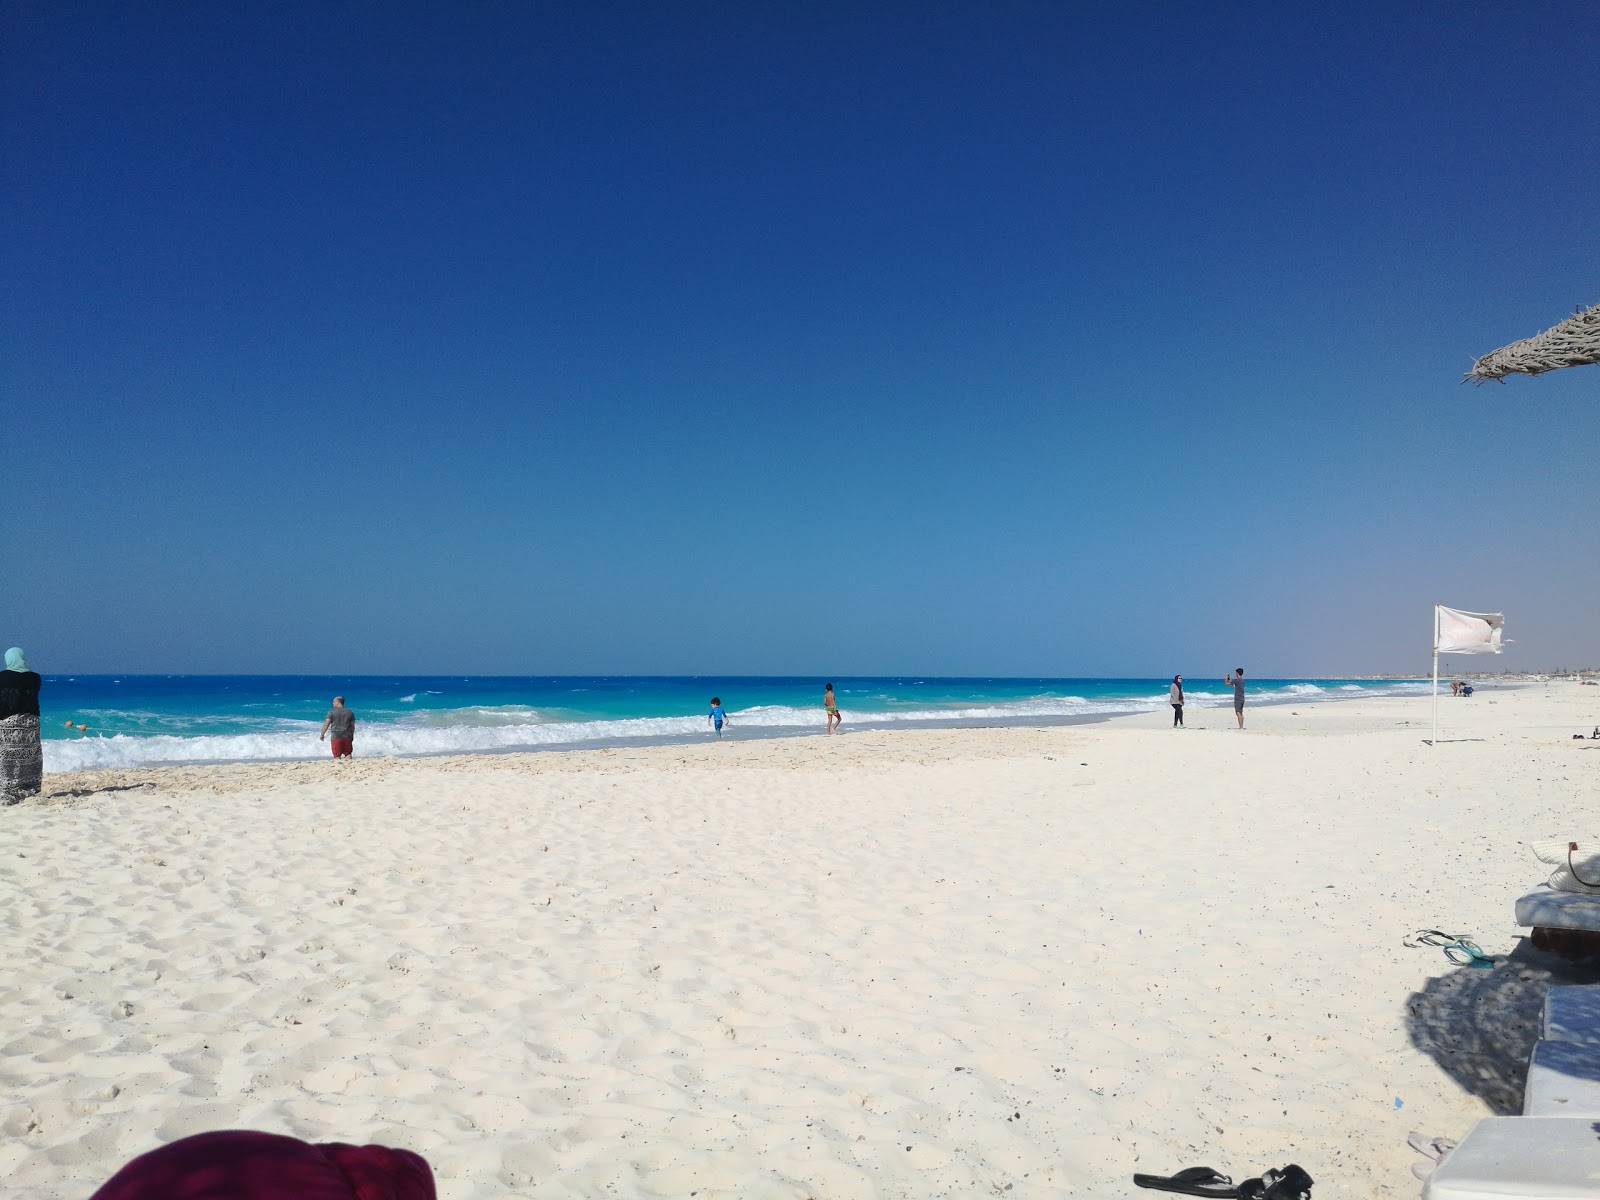 Assiut University Beach'in fotoğrafı beyaz kum yüzey ile